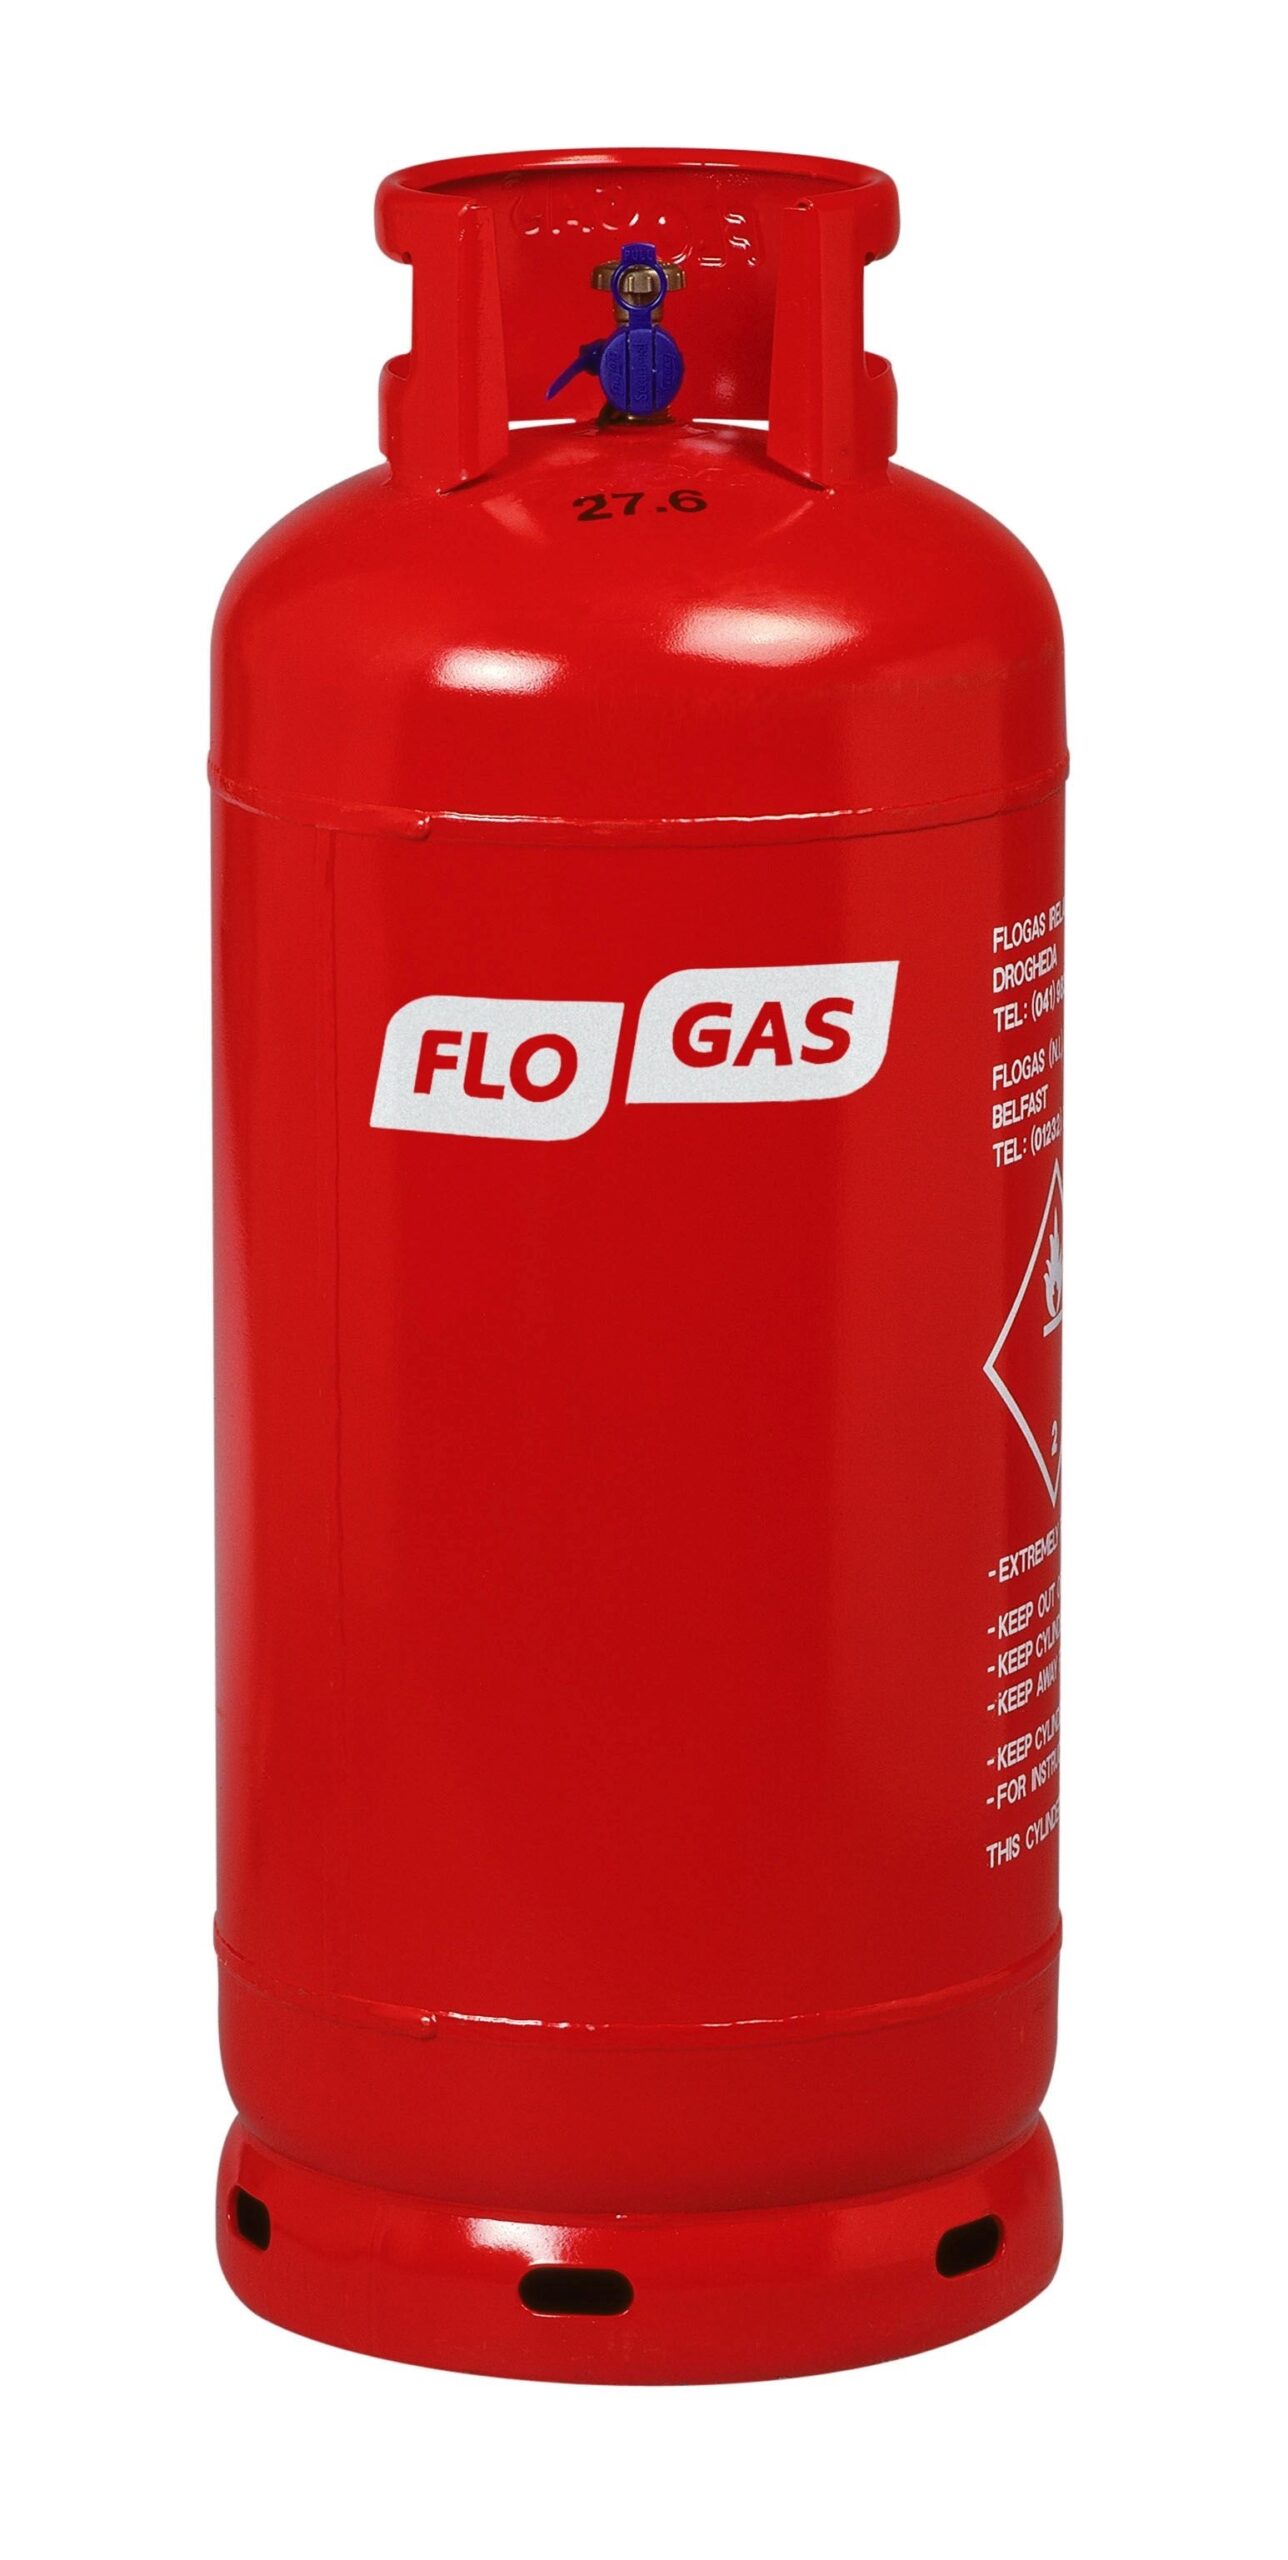 Calor 34kg Gas Cylinder, Buy Online Today